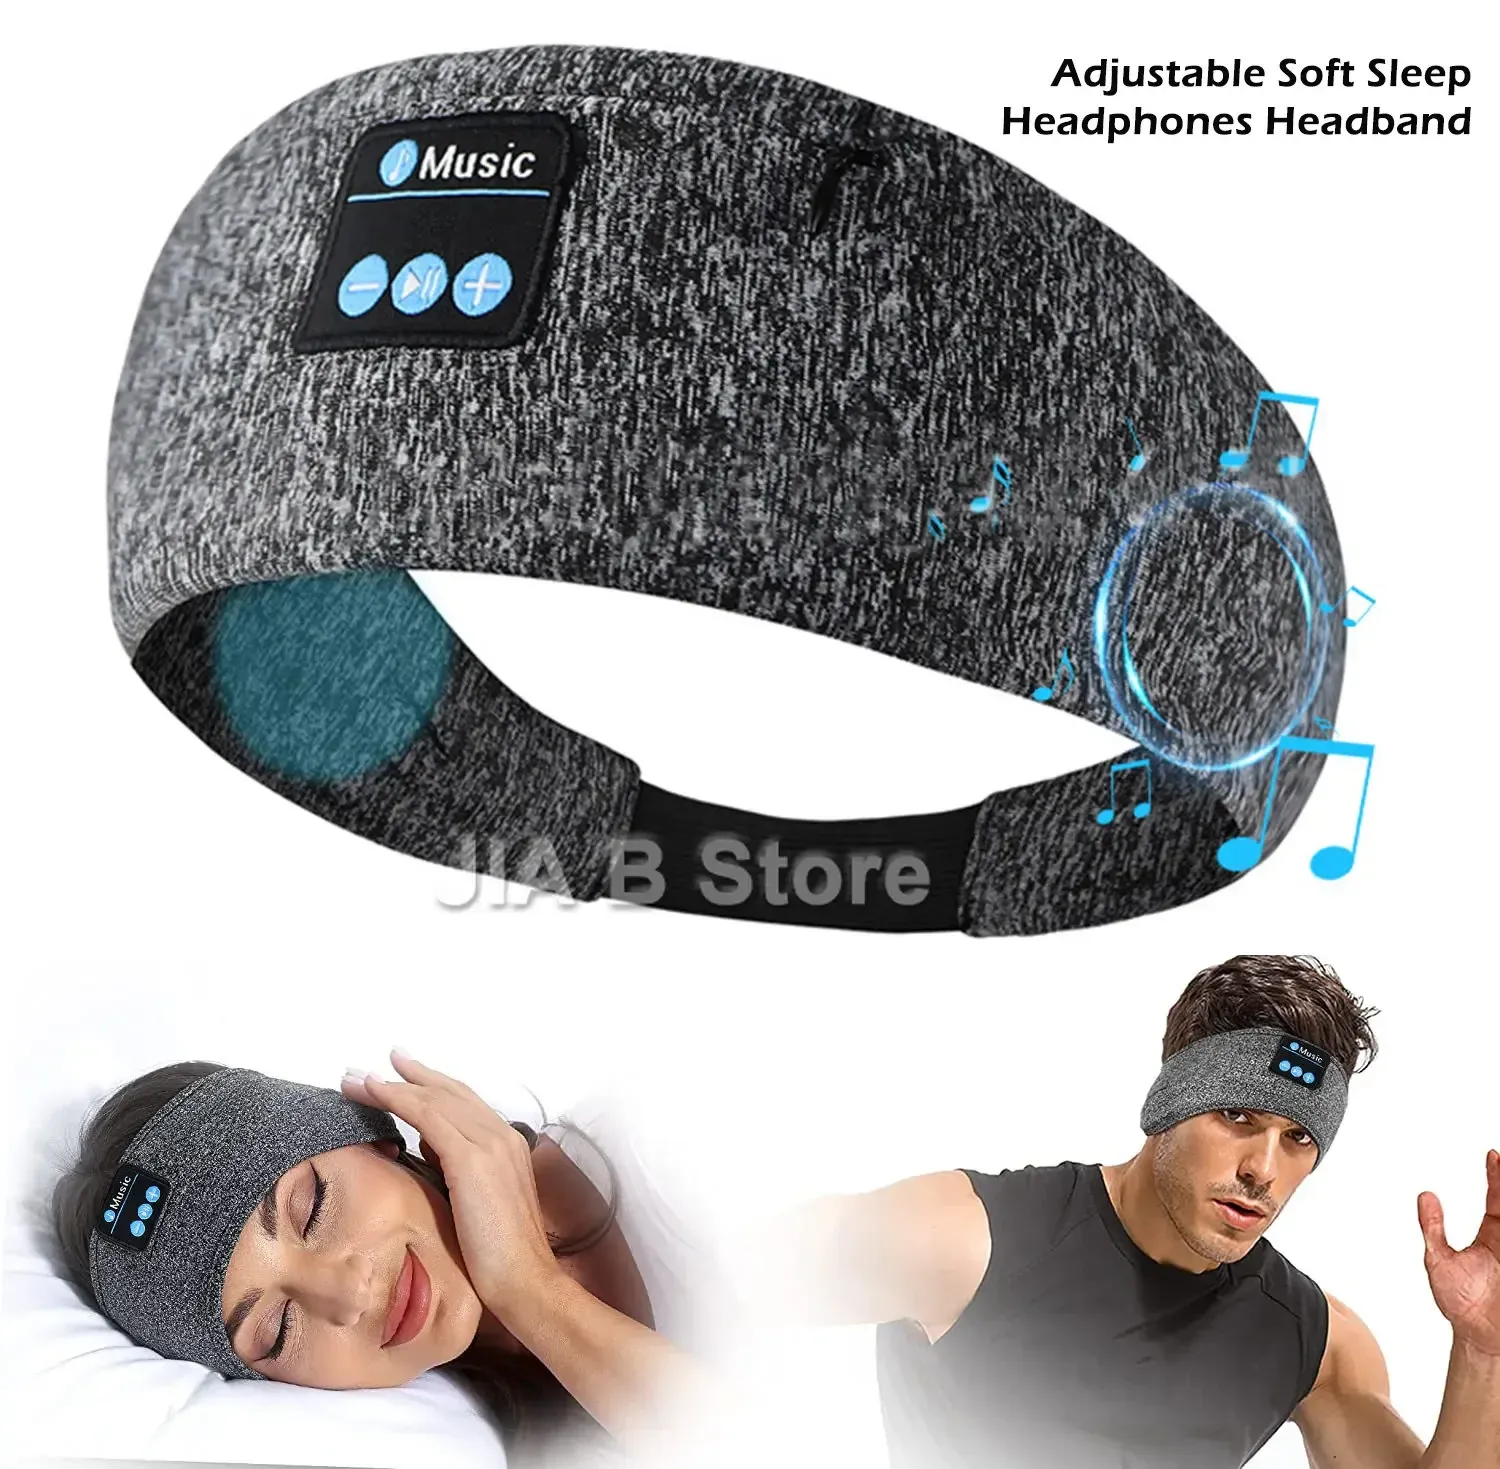 Słuchawki/zestaw słuchawkowy Regulowane miękkie słuchawki do snu Bluetooth Pałąk z wbudowanymi głośnikami idealny do uśpienia bocznego, treningu, biegania, jogi, podróży